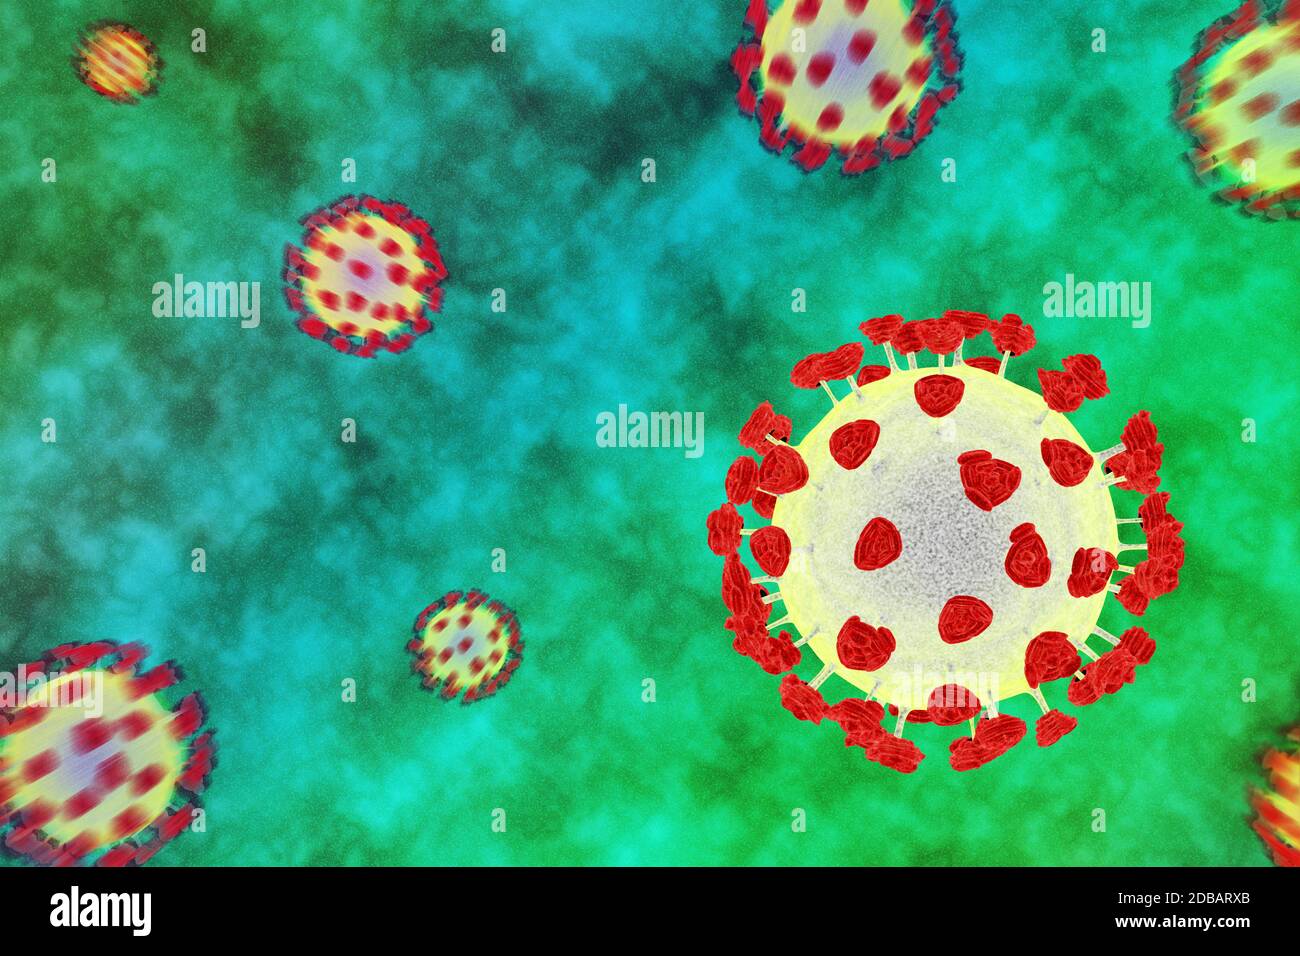 Immagine concettuale con molti virus per la pandemia della malattia di coronavirus 2019 (covid-19) Foto Stock